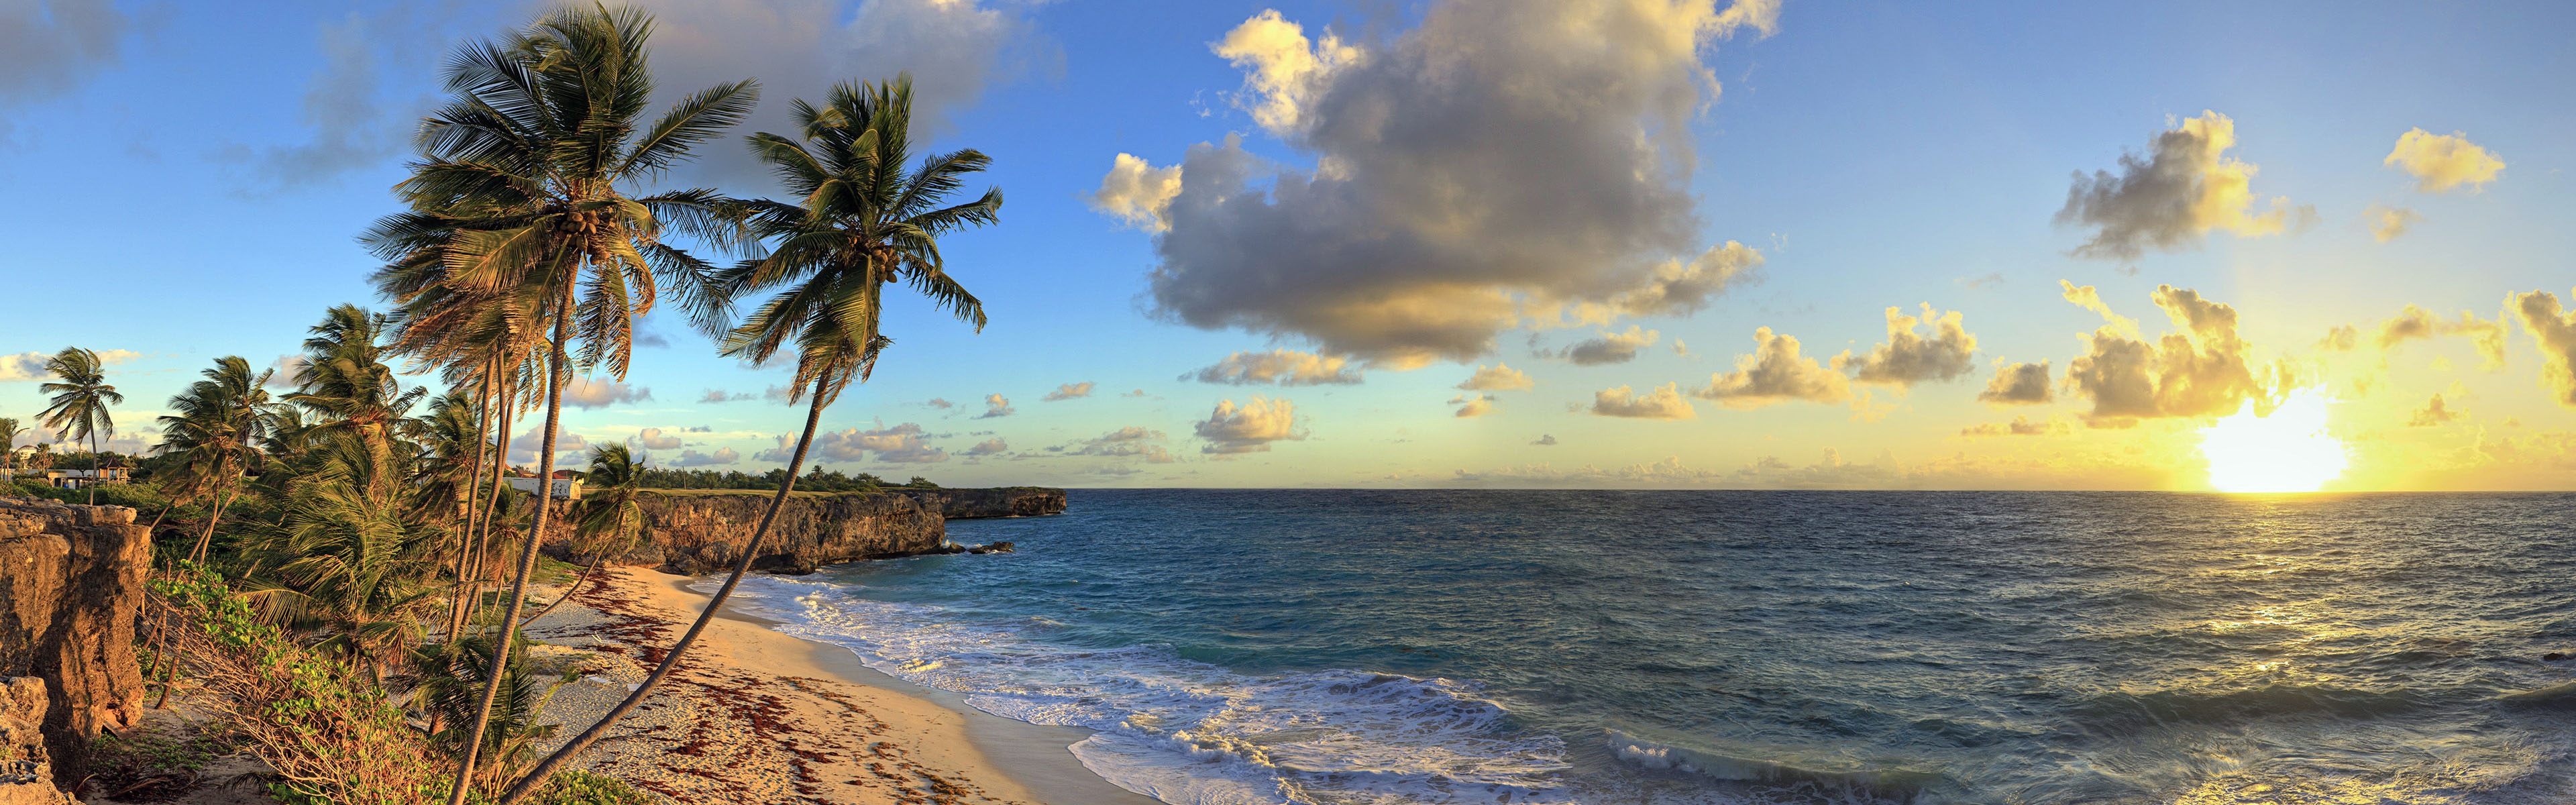 美しいビーチの夕日 Windows 8のパノラマワイドスクリーンの壁紙 6 3840x10 壁紙ダウンロード 美しいビーチの夕日 Windows 8のパノラマワイドスクリーンの壁紙 システム 壁紙 V3の壁紙